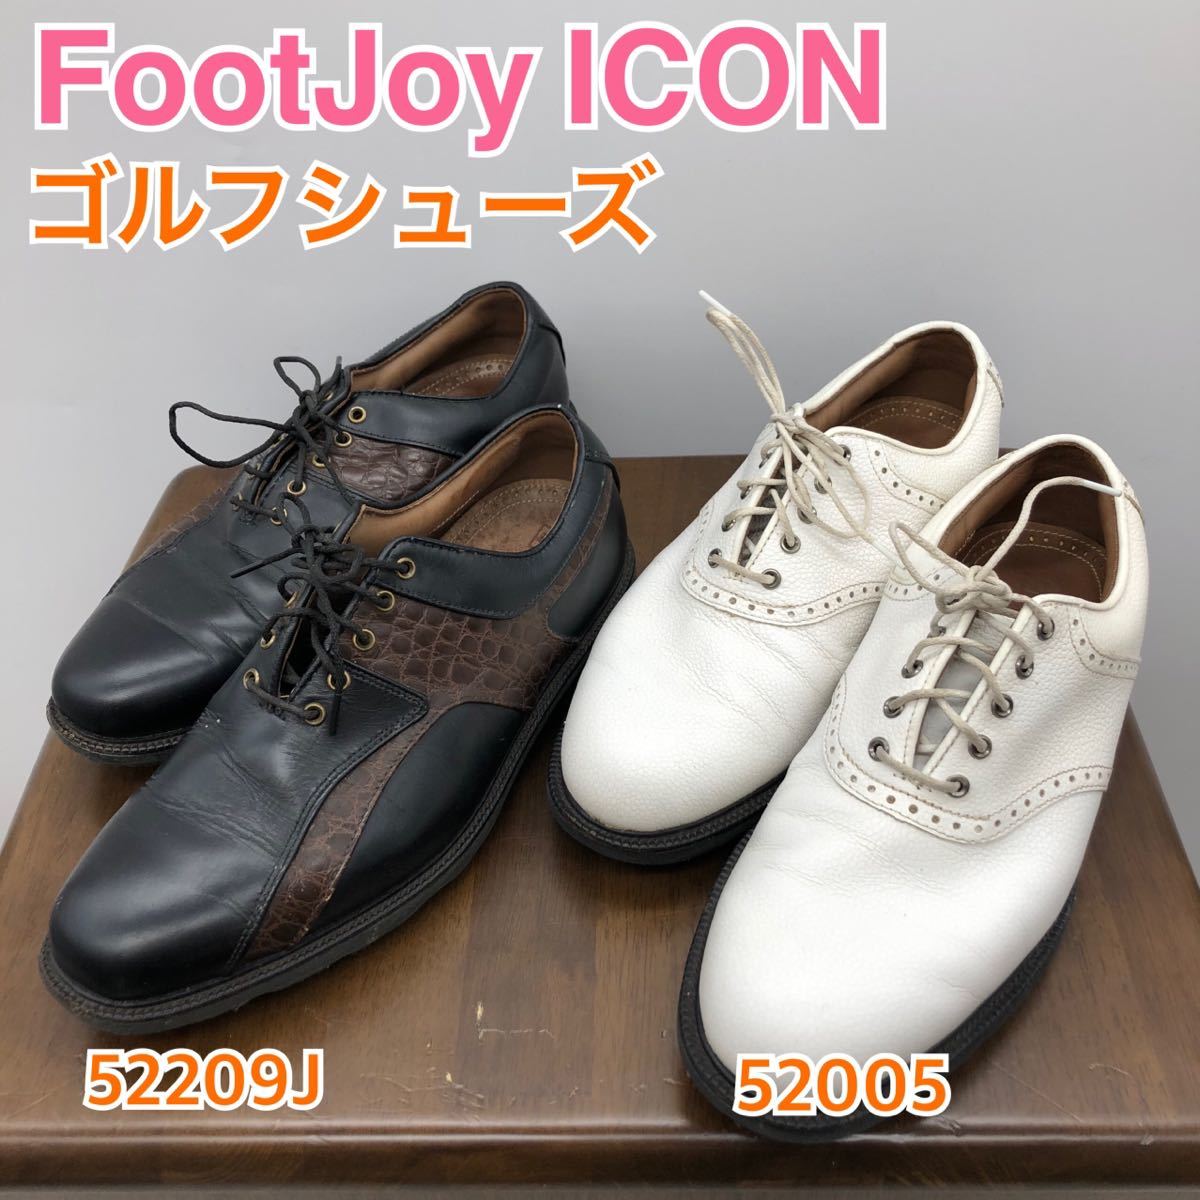 全日本送料無料 アイコン フットジョイ Footjoy 26cm icon - シューズ(男性用) - alrc.asia